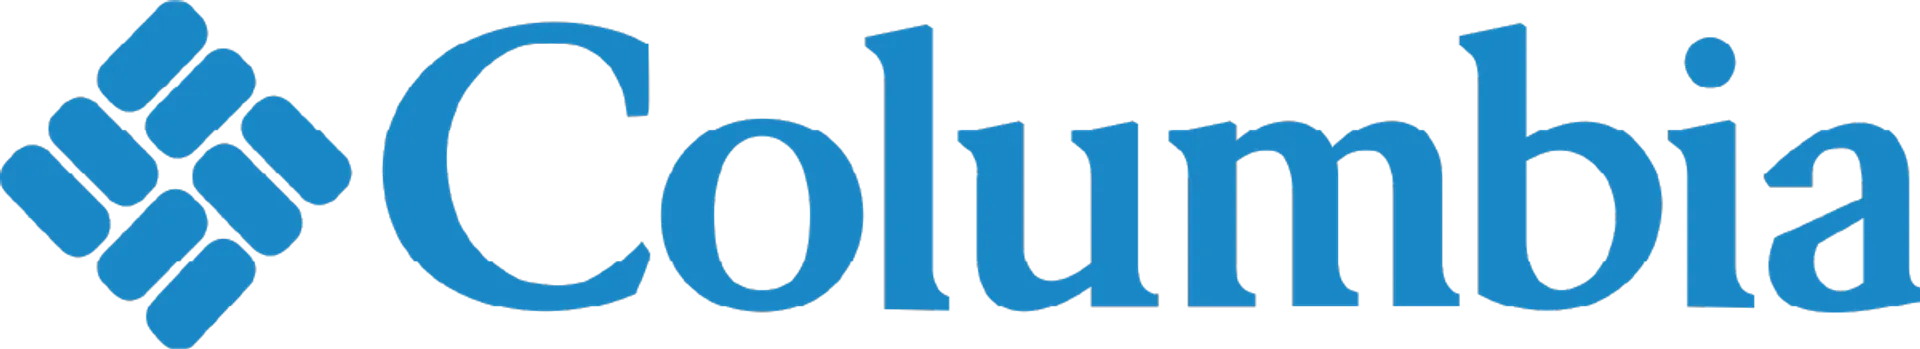 COLUMBIA logo de circulaire